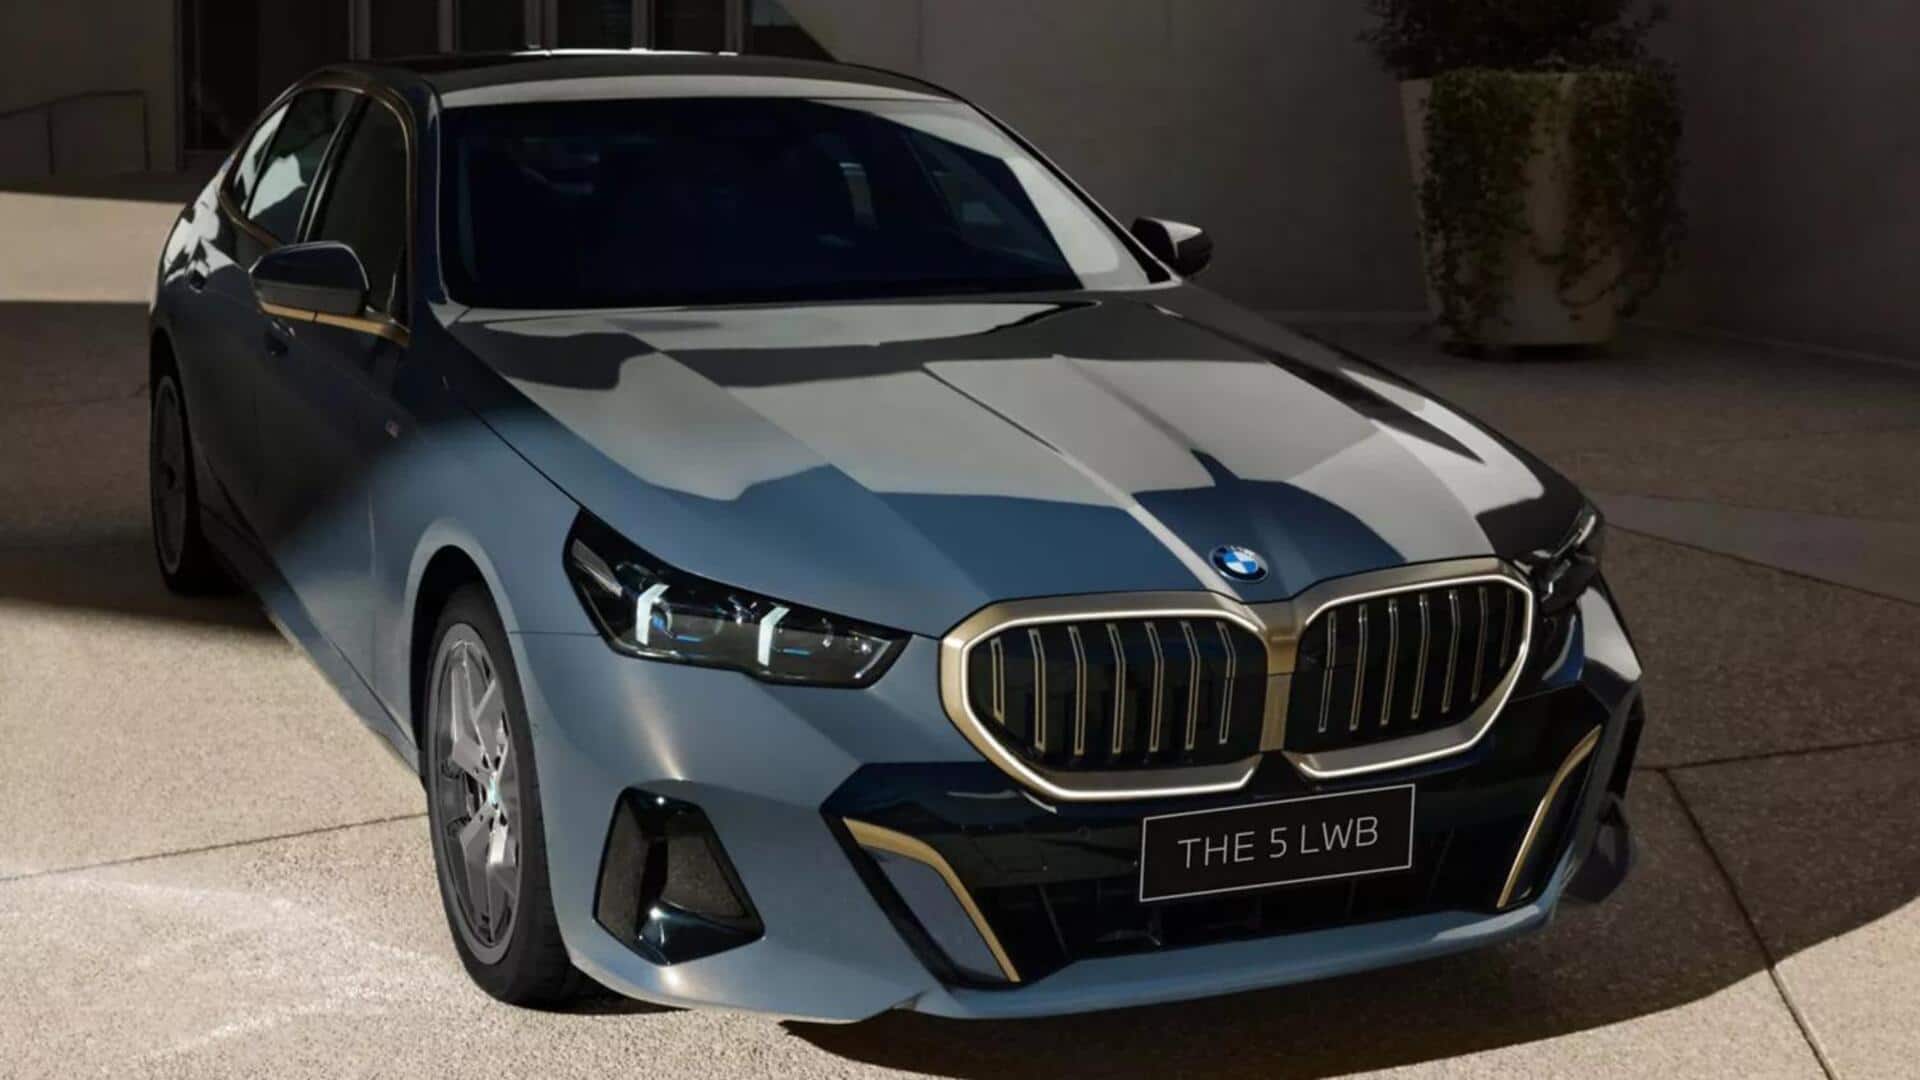 नई BMW 5-सीरीज LWB के रंग विकल्पों का हुआ खुलासा, जानिए कौनसे होंगे 